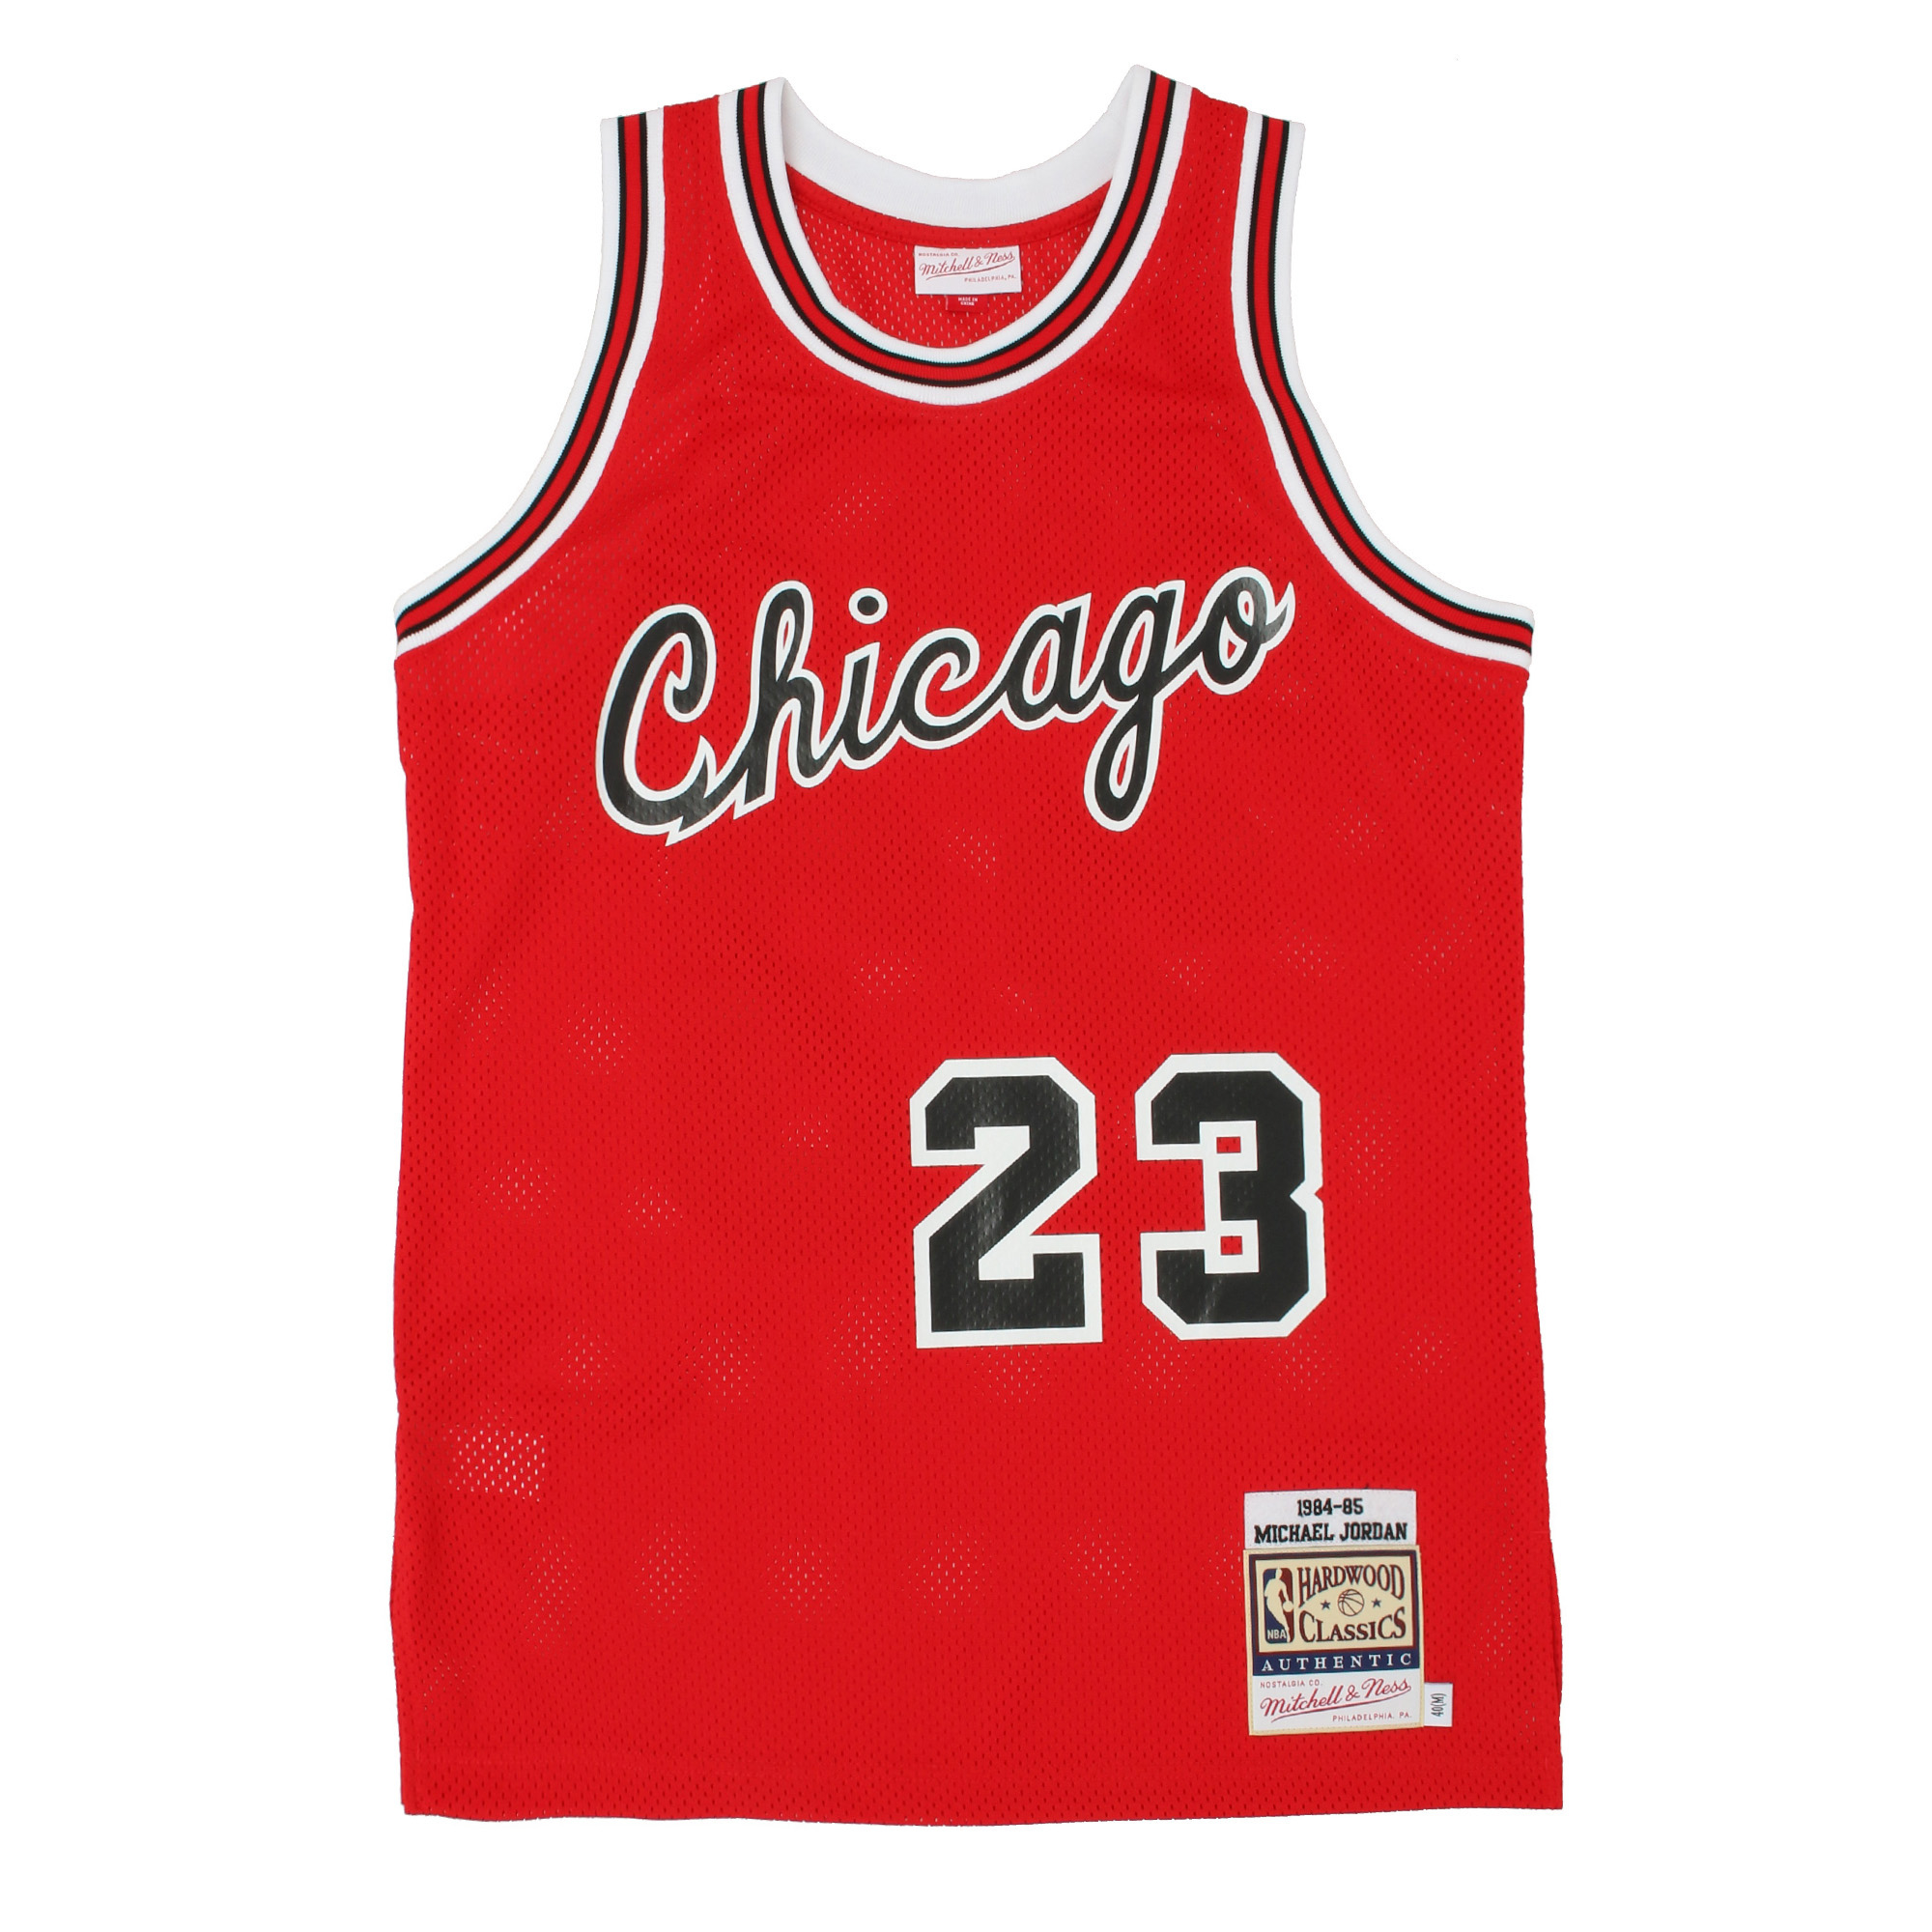 マイケル・ジョーダン ブルズ ロード オーセンティックジャージ 1984-85 CHICAGO BULLS MICHAEL JORDAN  Authentic Jersey RED 1984-85